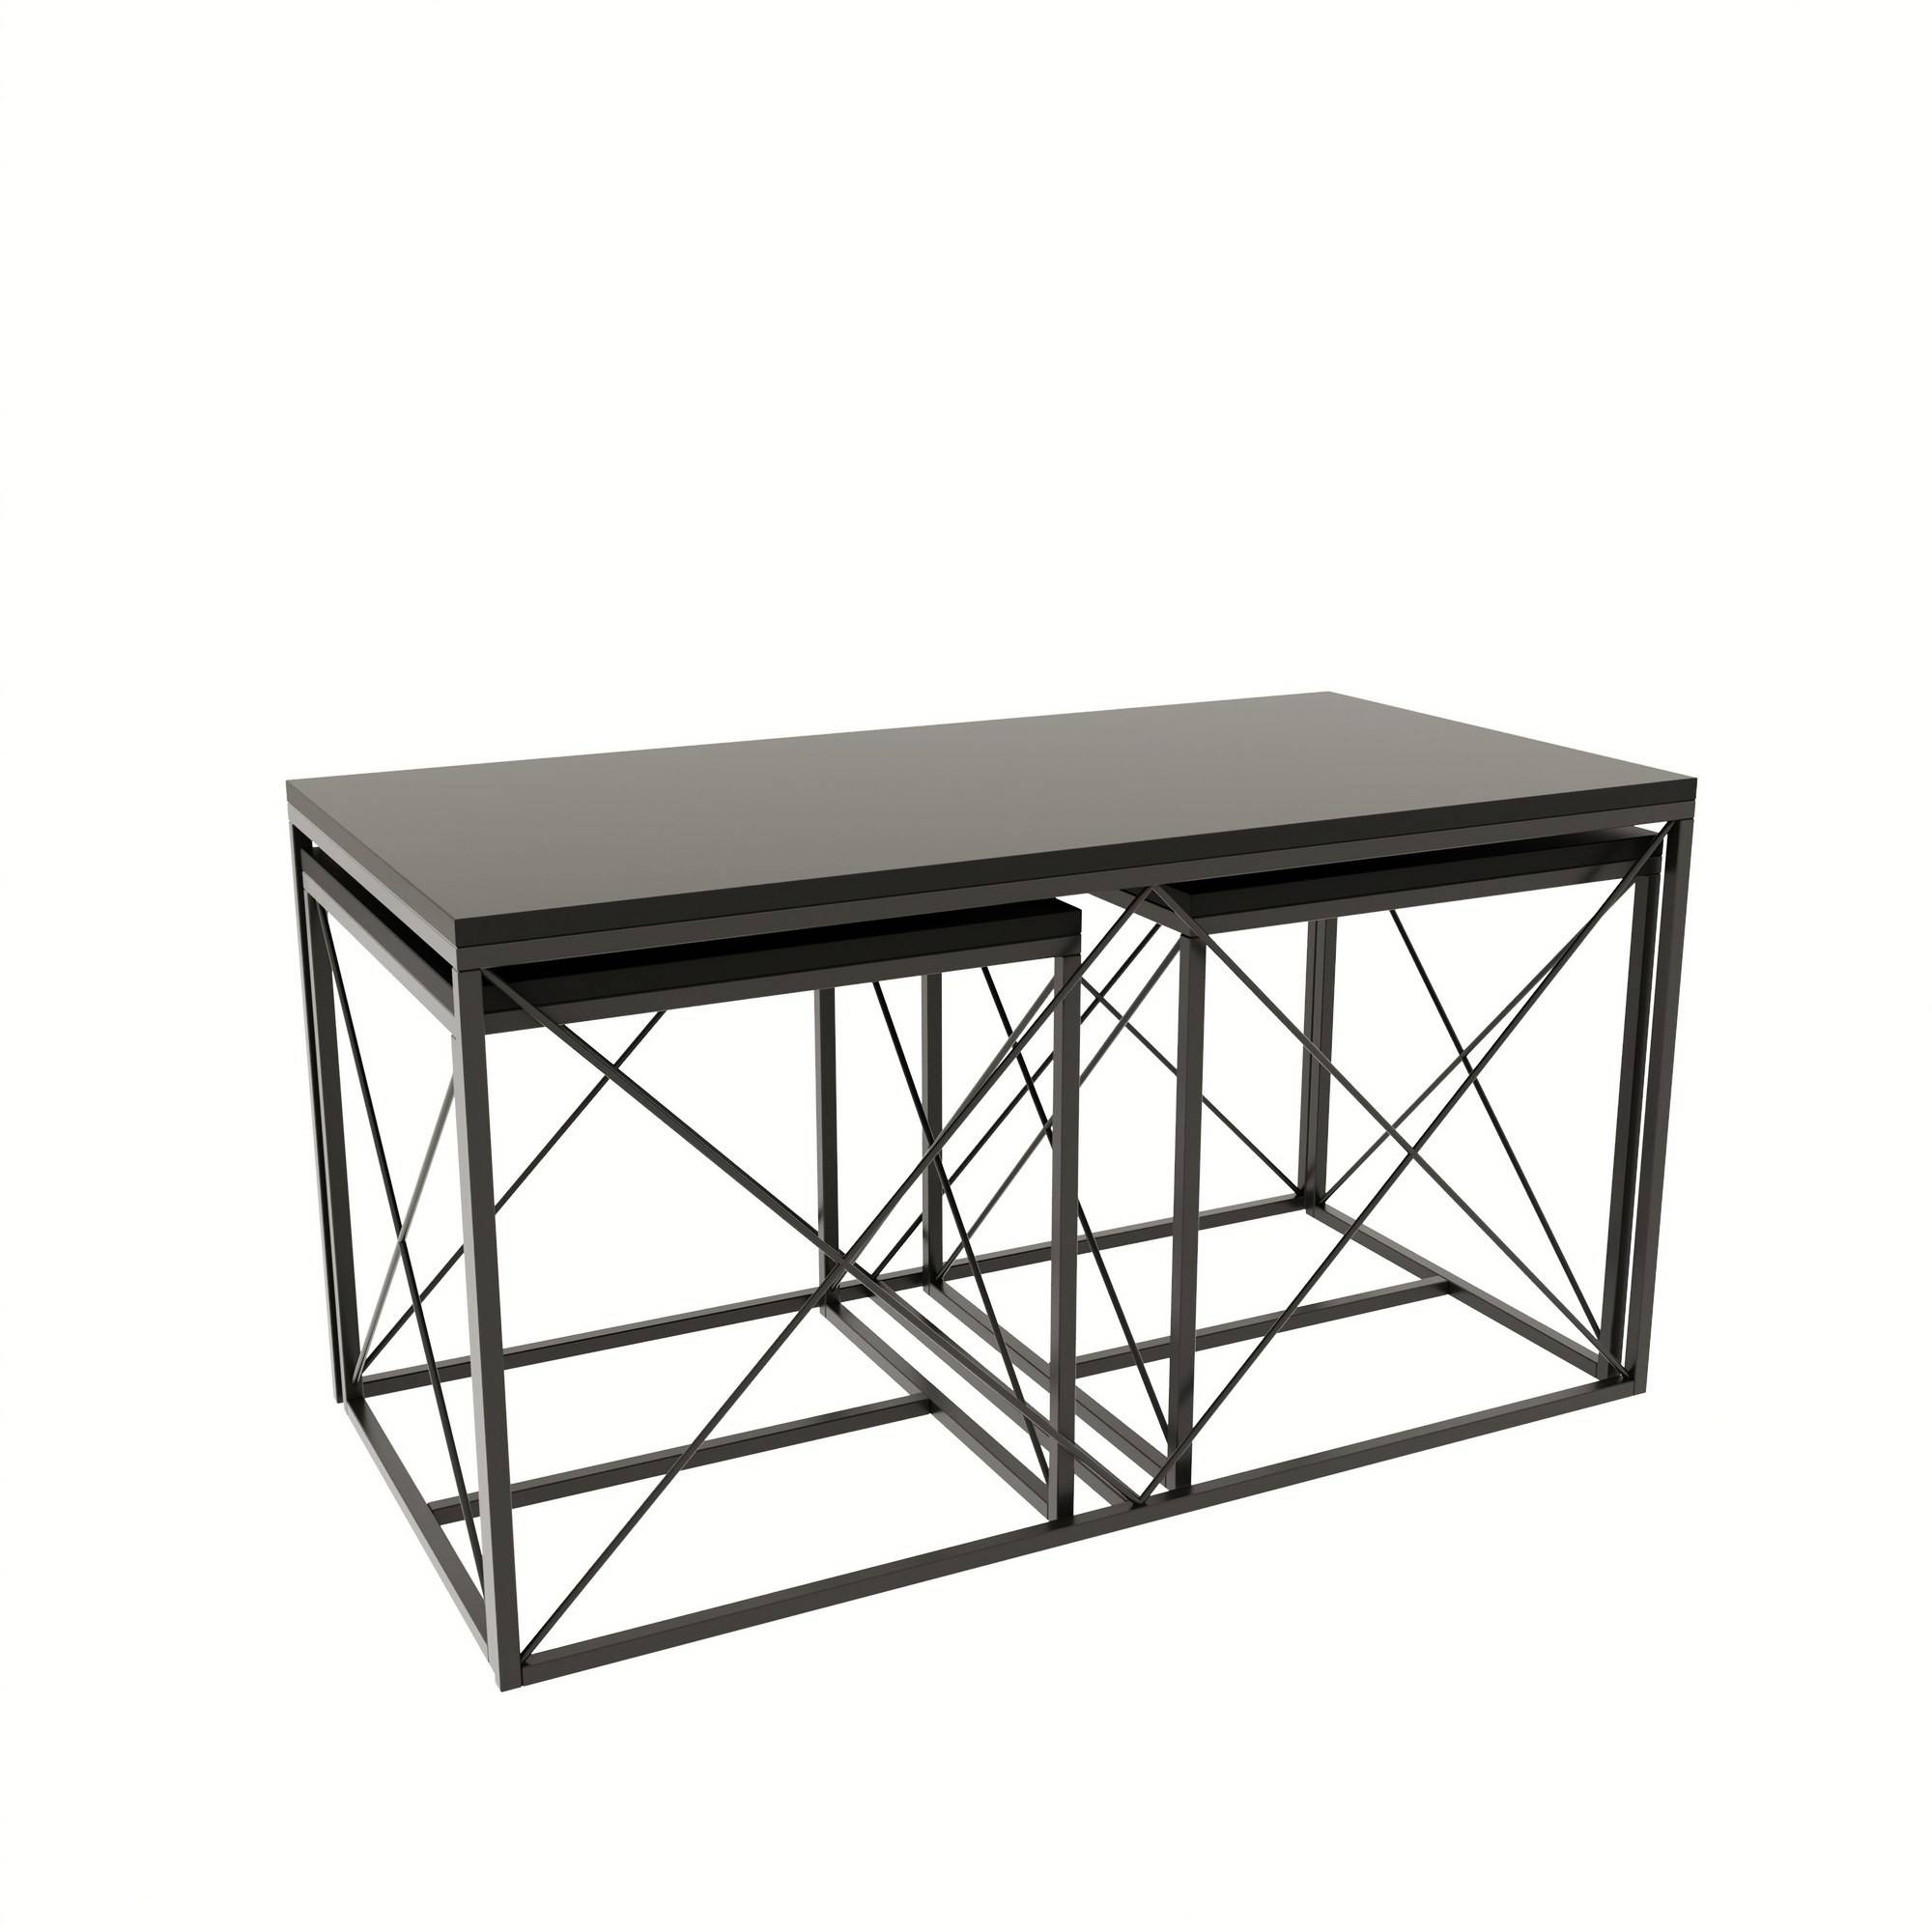 Lote de 3 mesas de centro nido Langkawa de estilo industrial en metal negro y madera antracita